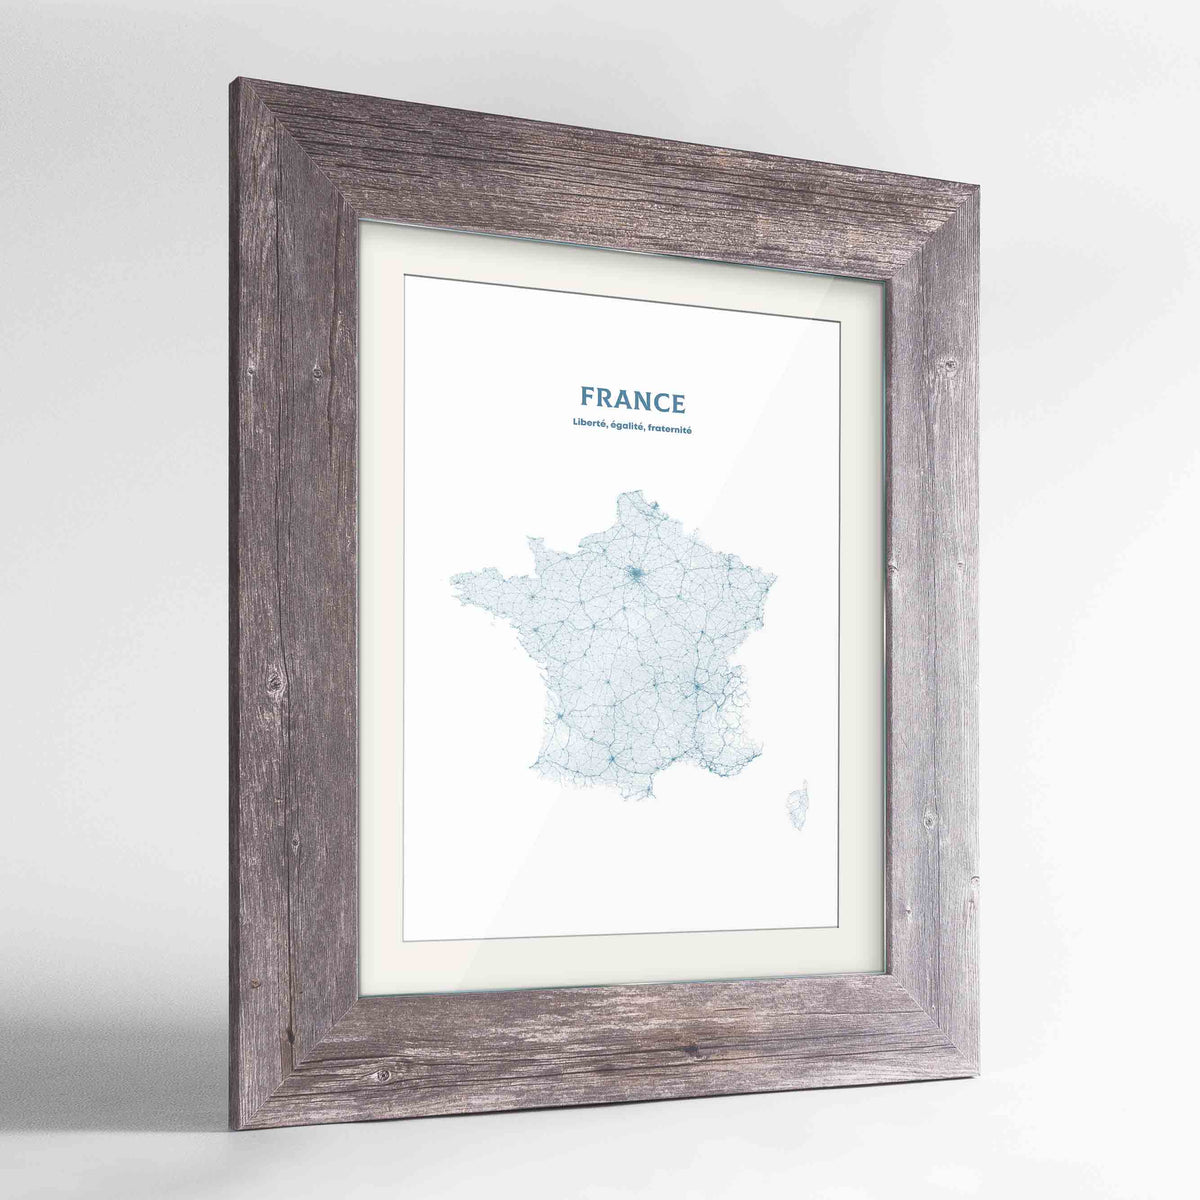 France - All Roads Art Print - Framed